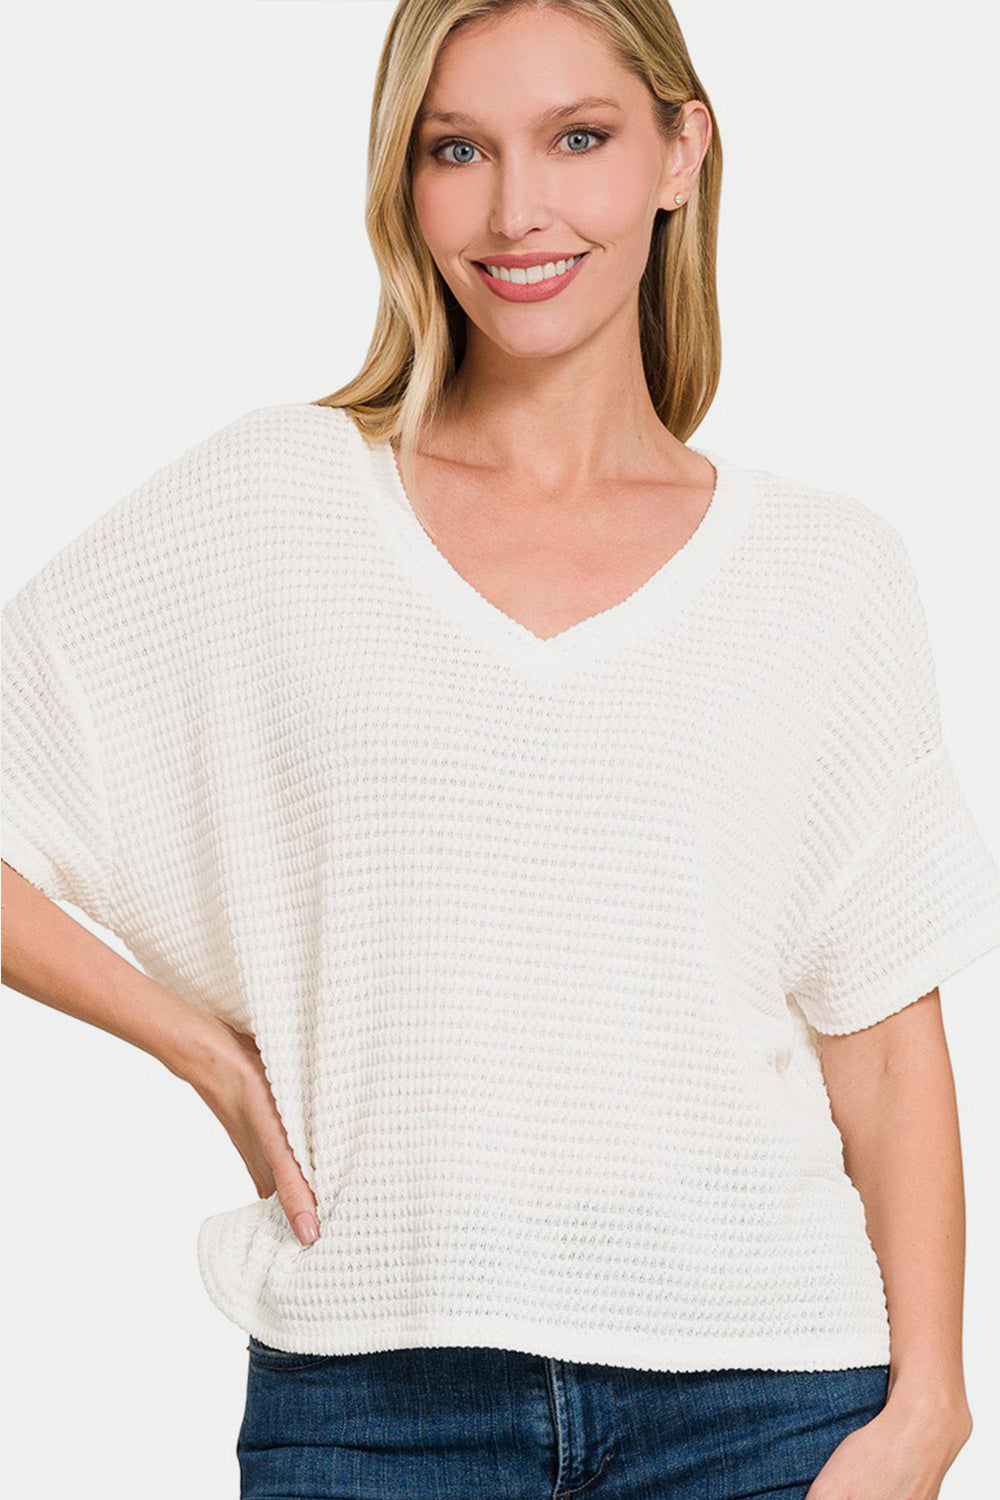 Drop Shoulder Short Sleeve Jacquard Sweater